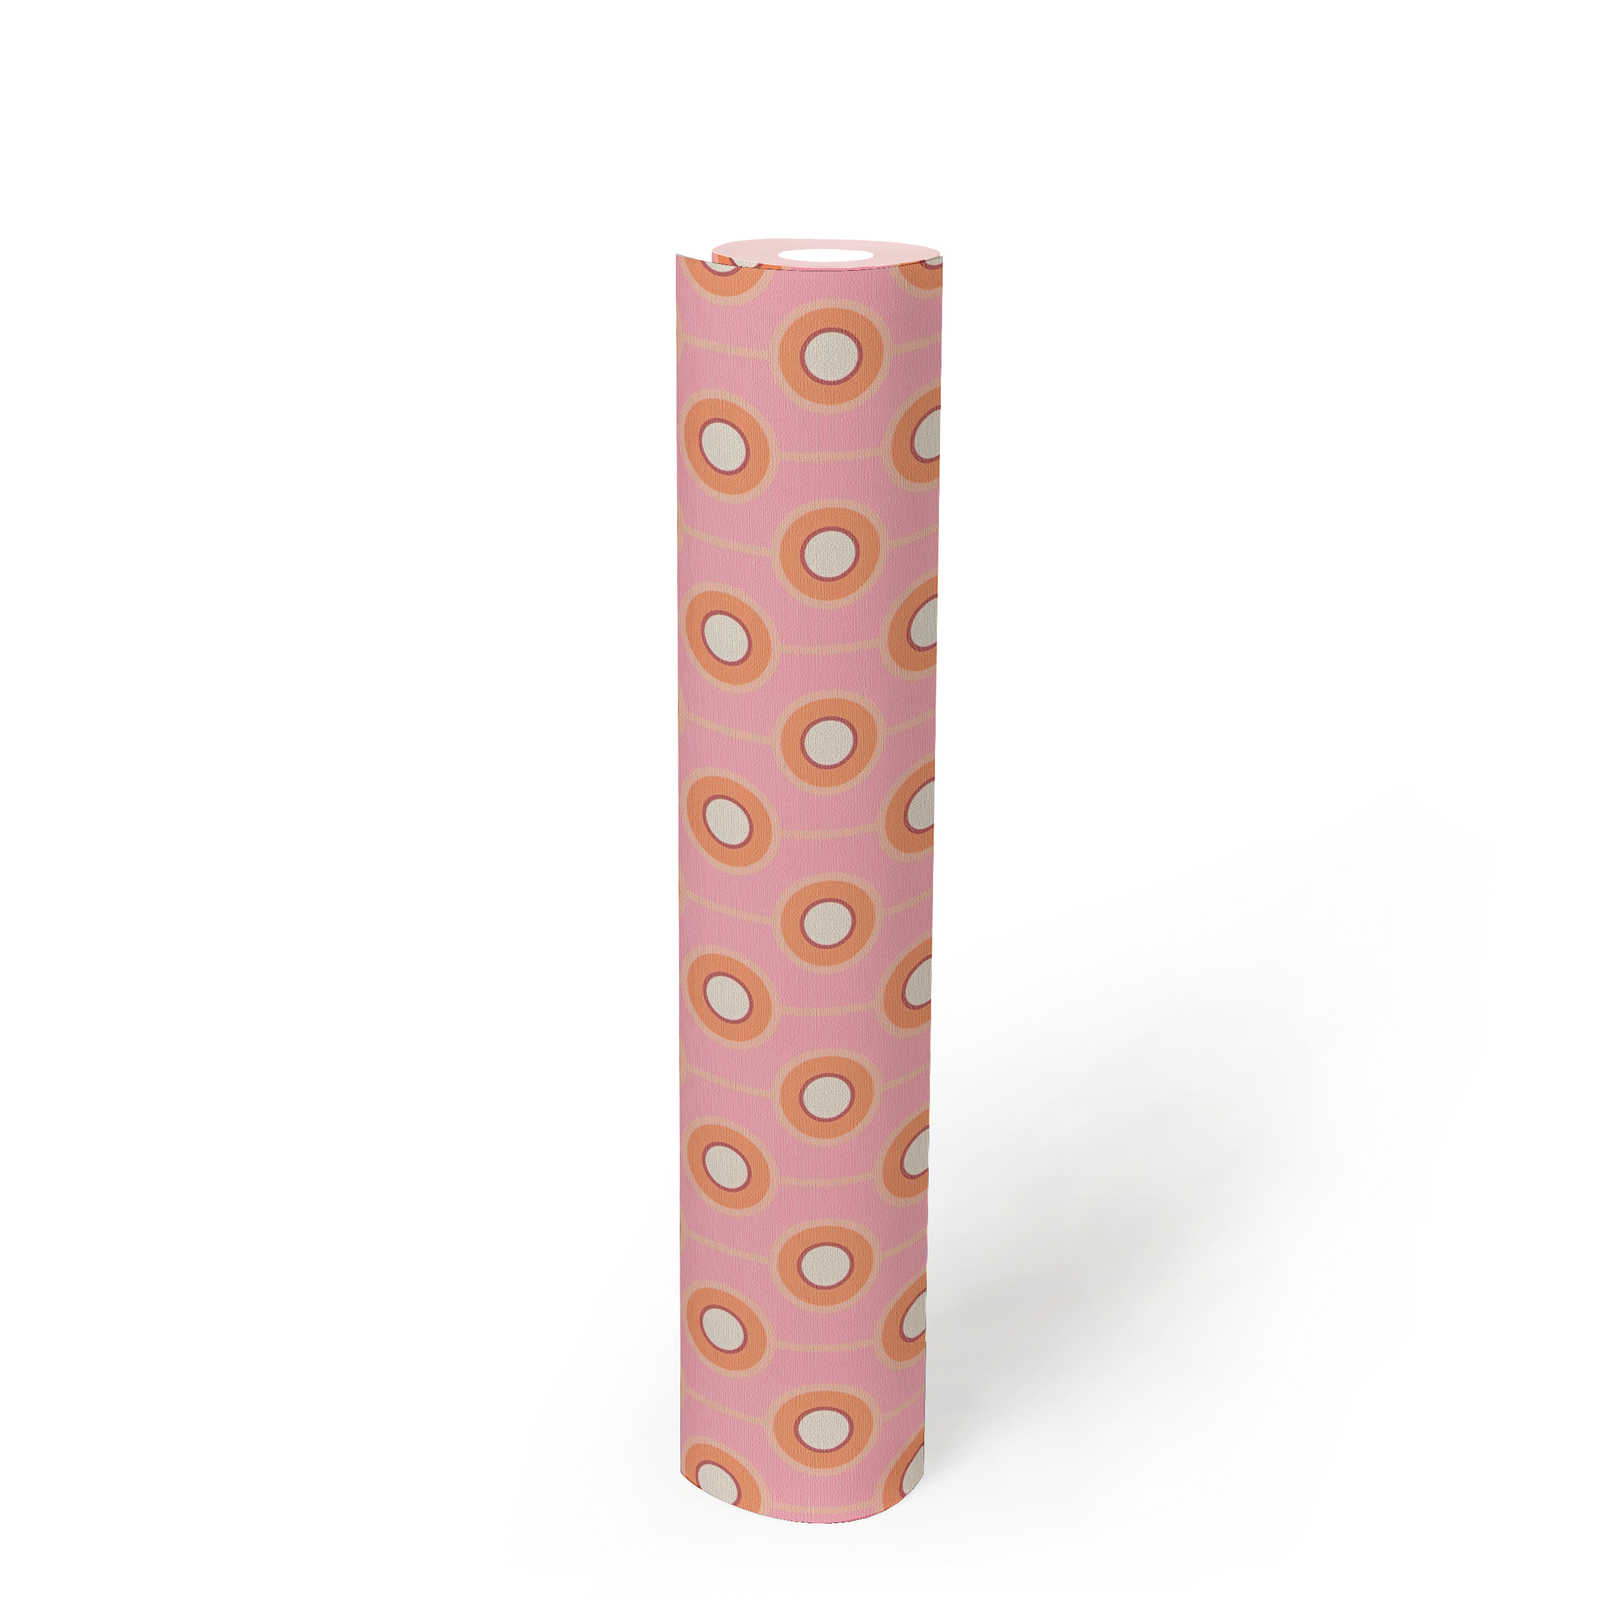             Leicht strukturierte Tapete mit Kreis Bemusterung – Pink, Orange, Beige
        